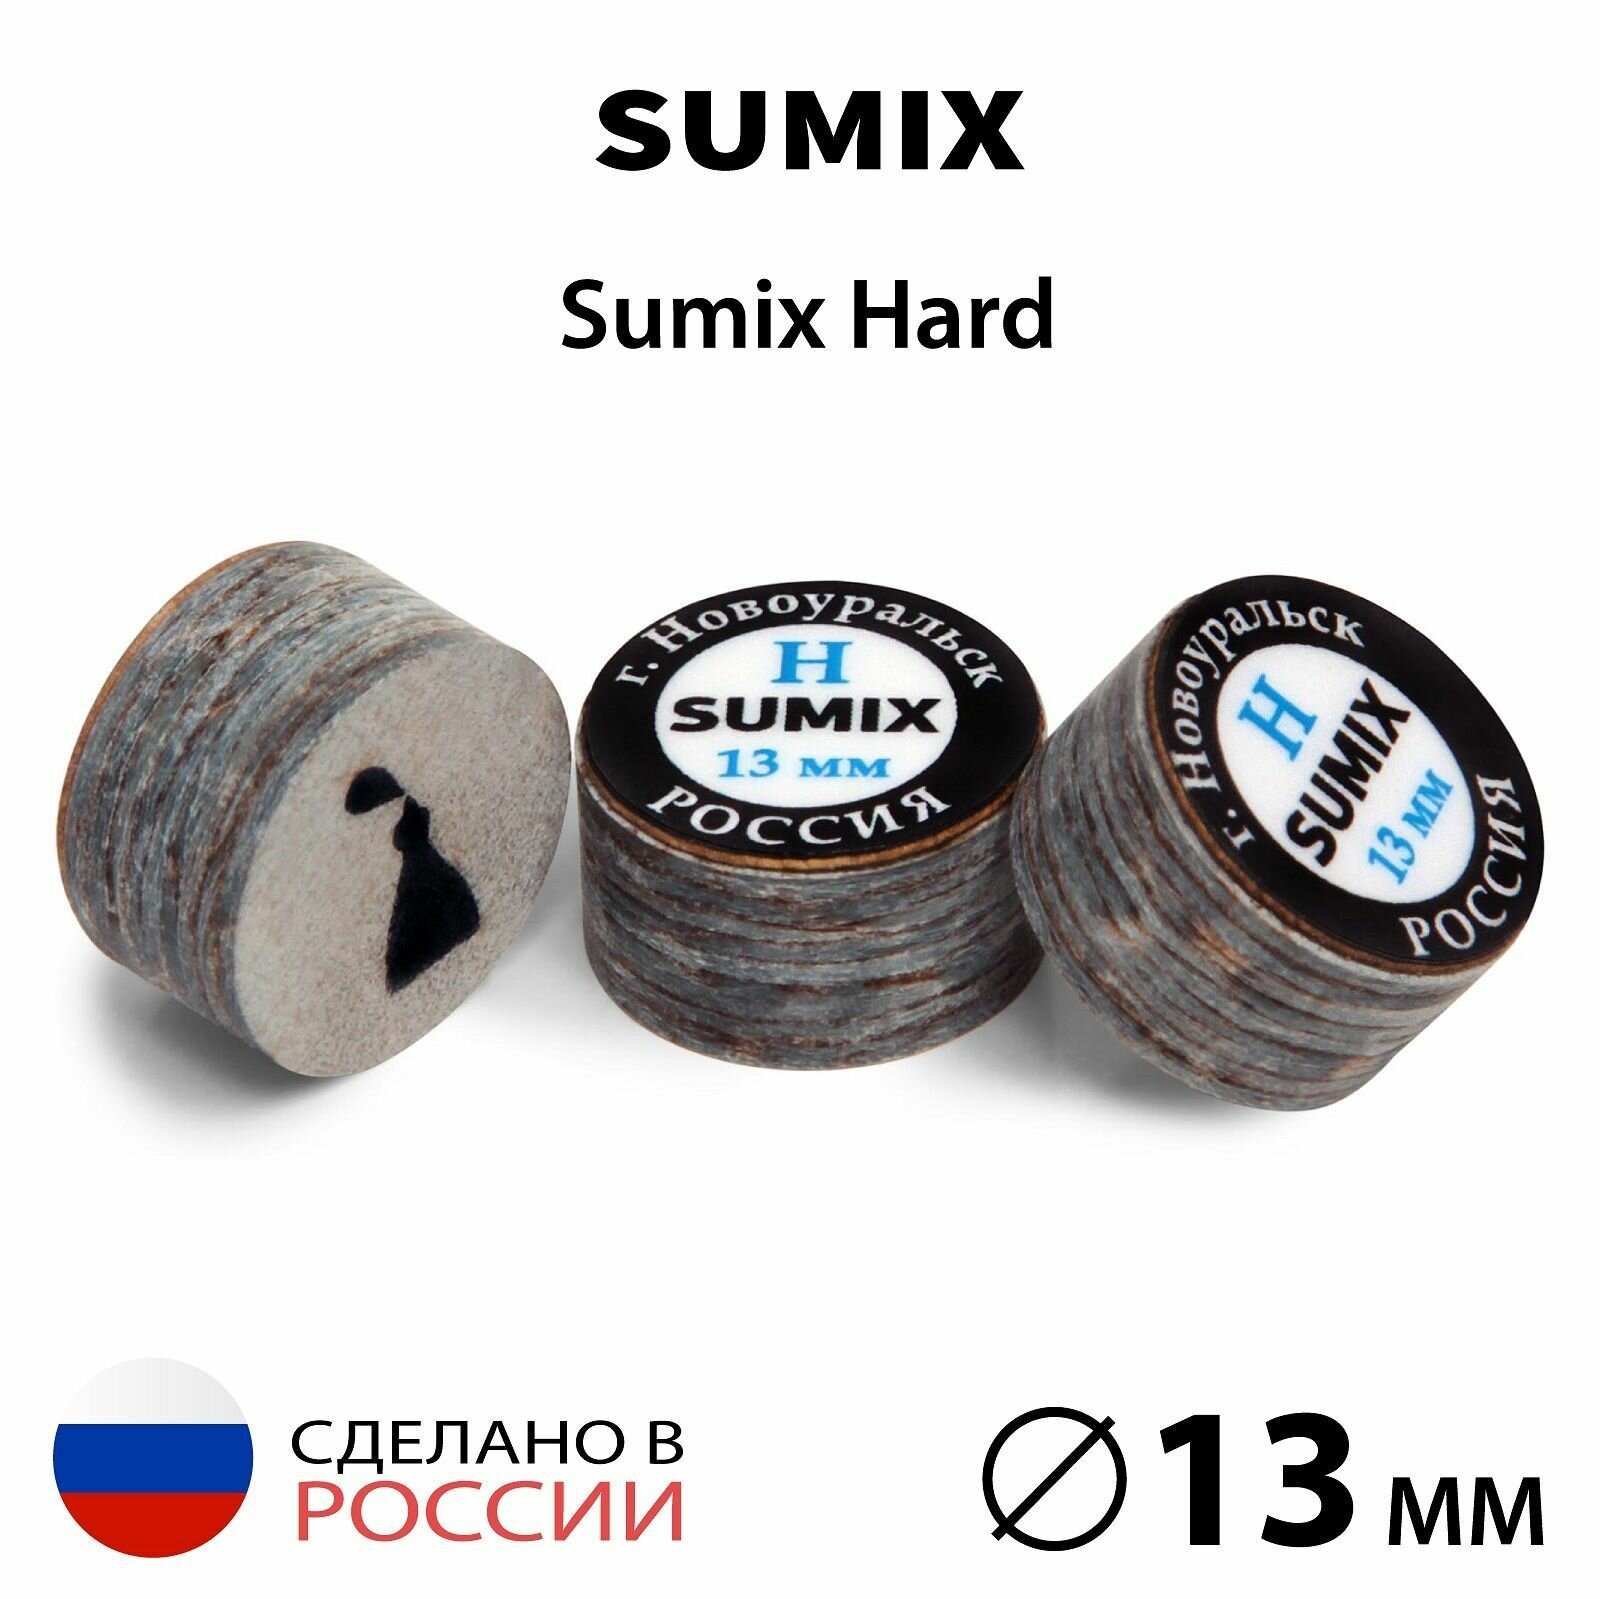 Наклейка для кия Sumix 13 мм Hard, многослойная, 1 шт.